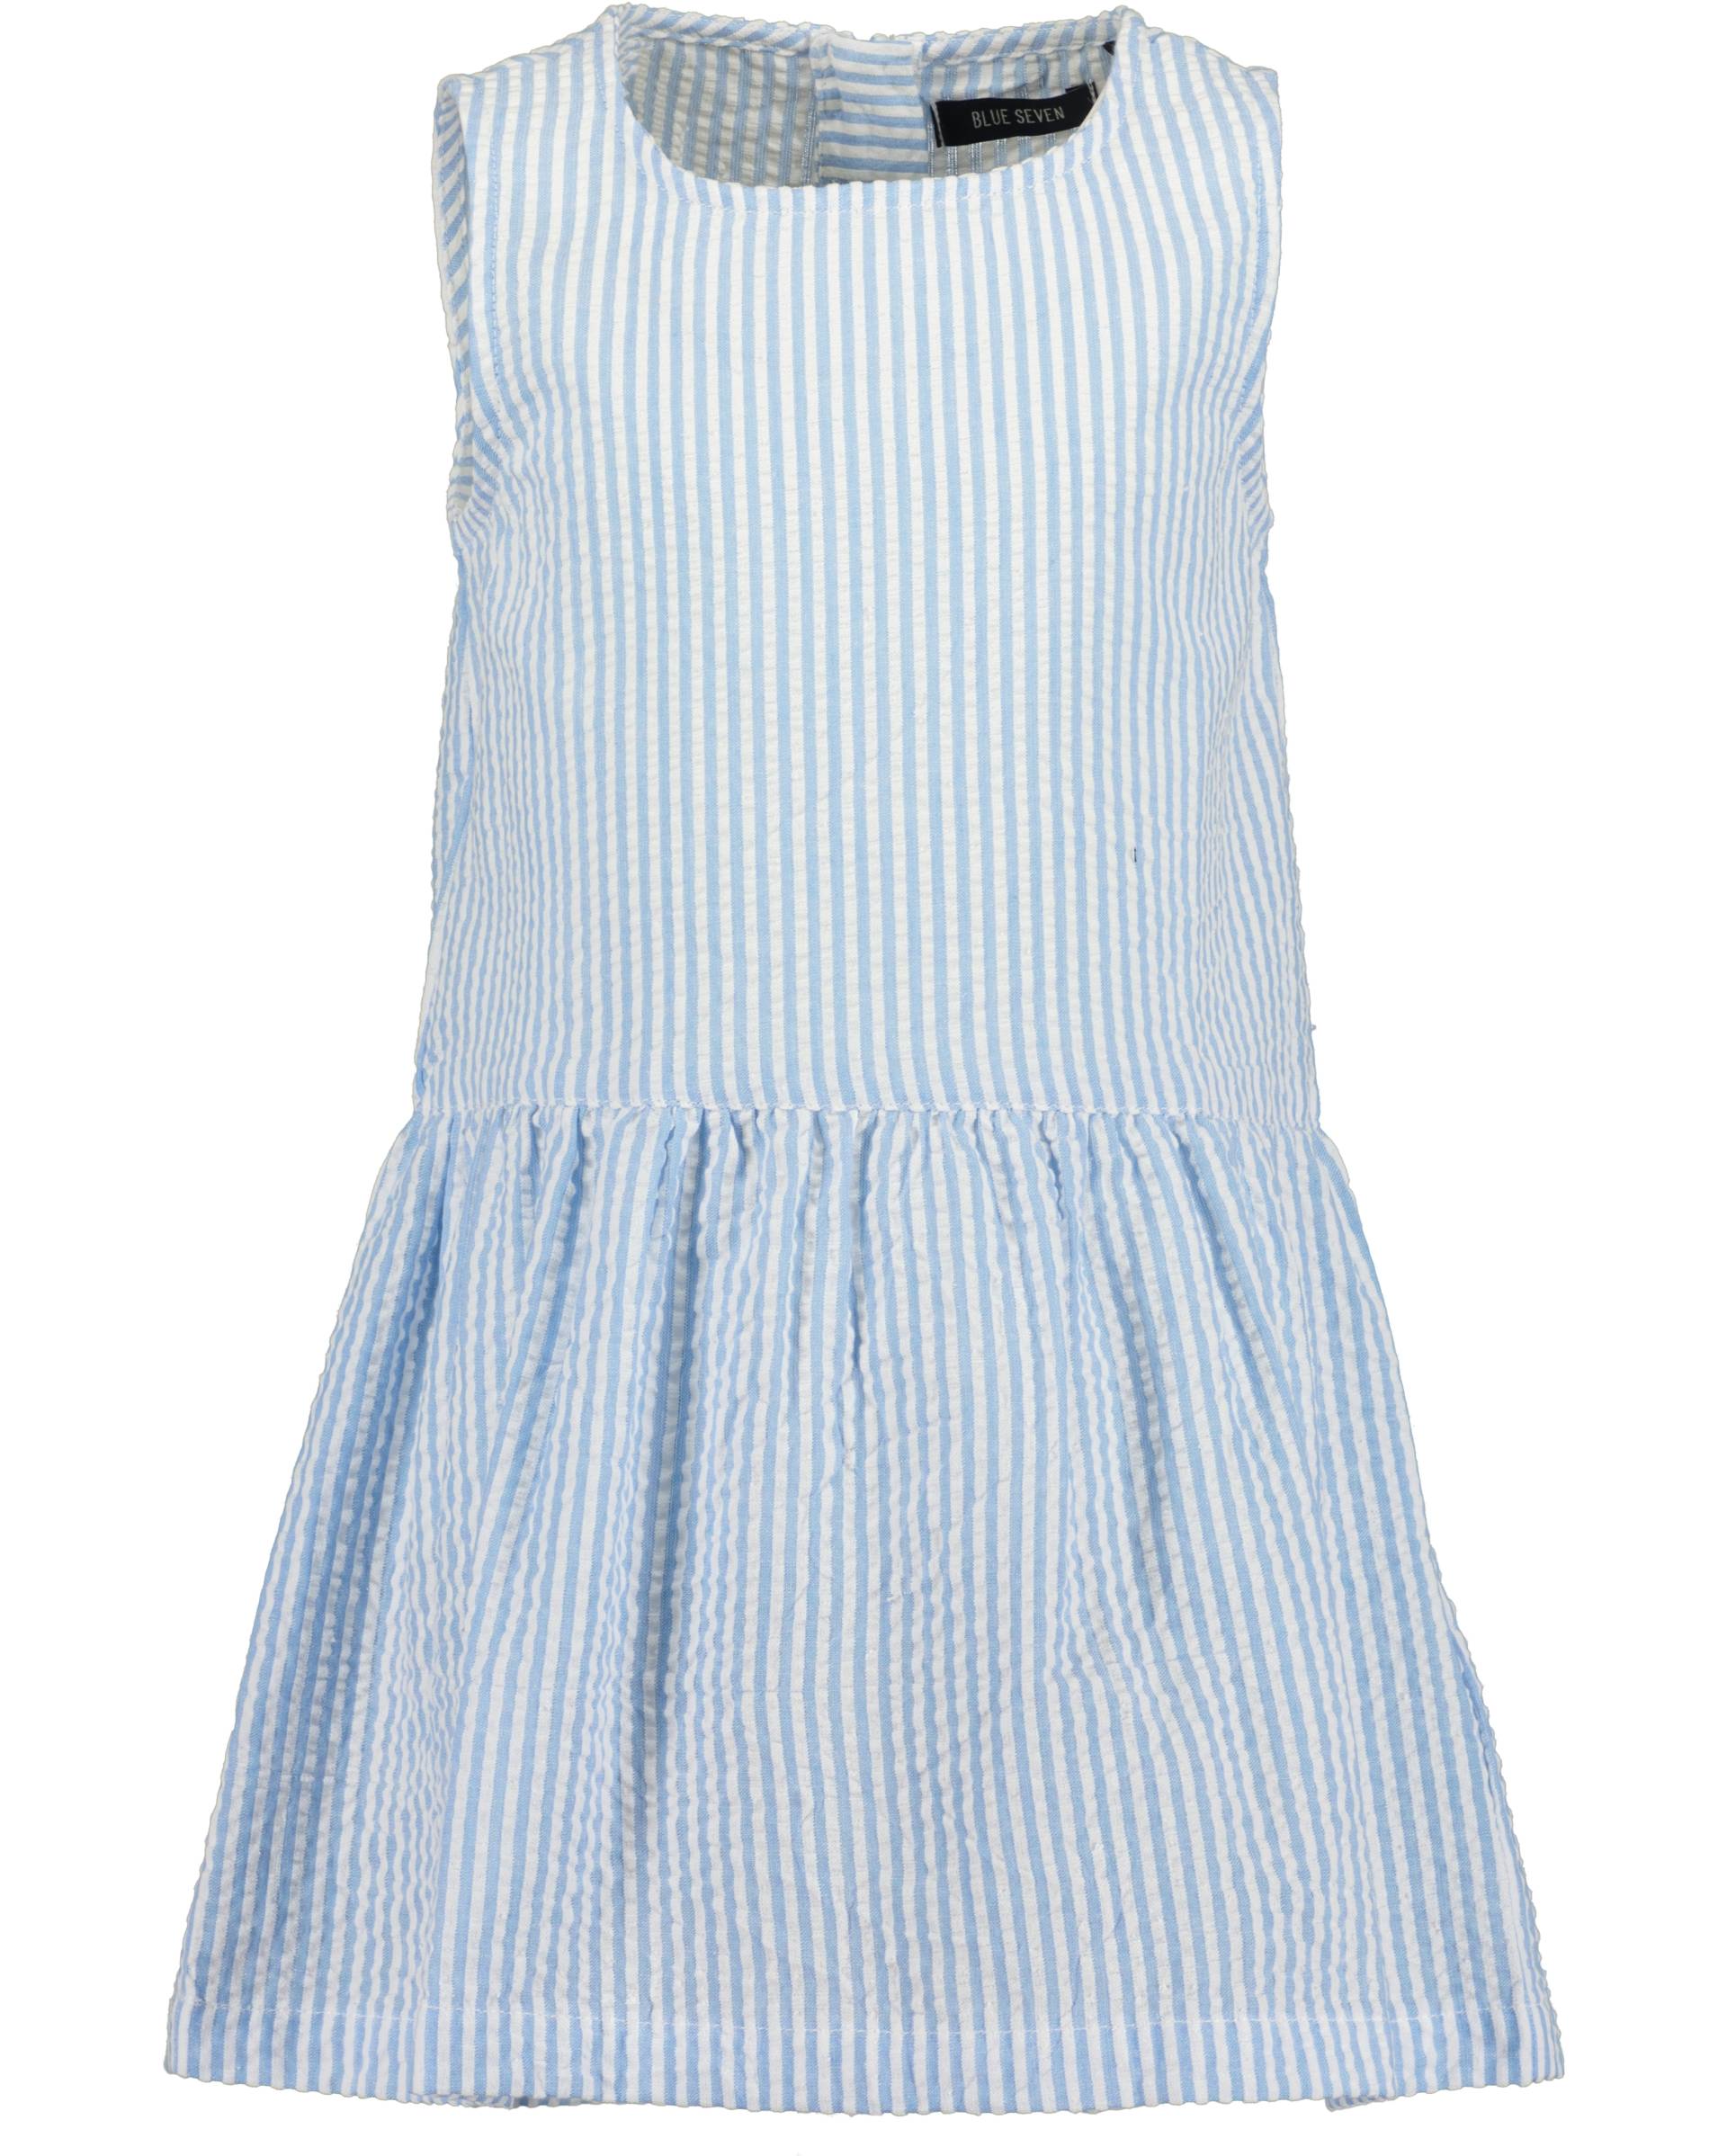 Blue Seven Sommerkleid »kl Md Kleid, Rundhals ohne Arm« von Blue Seven